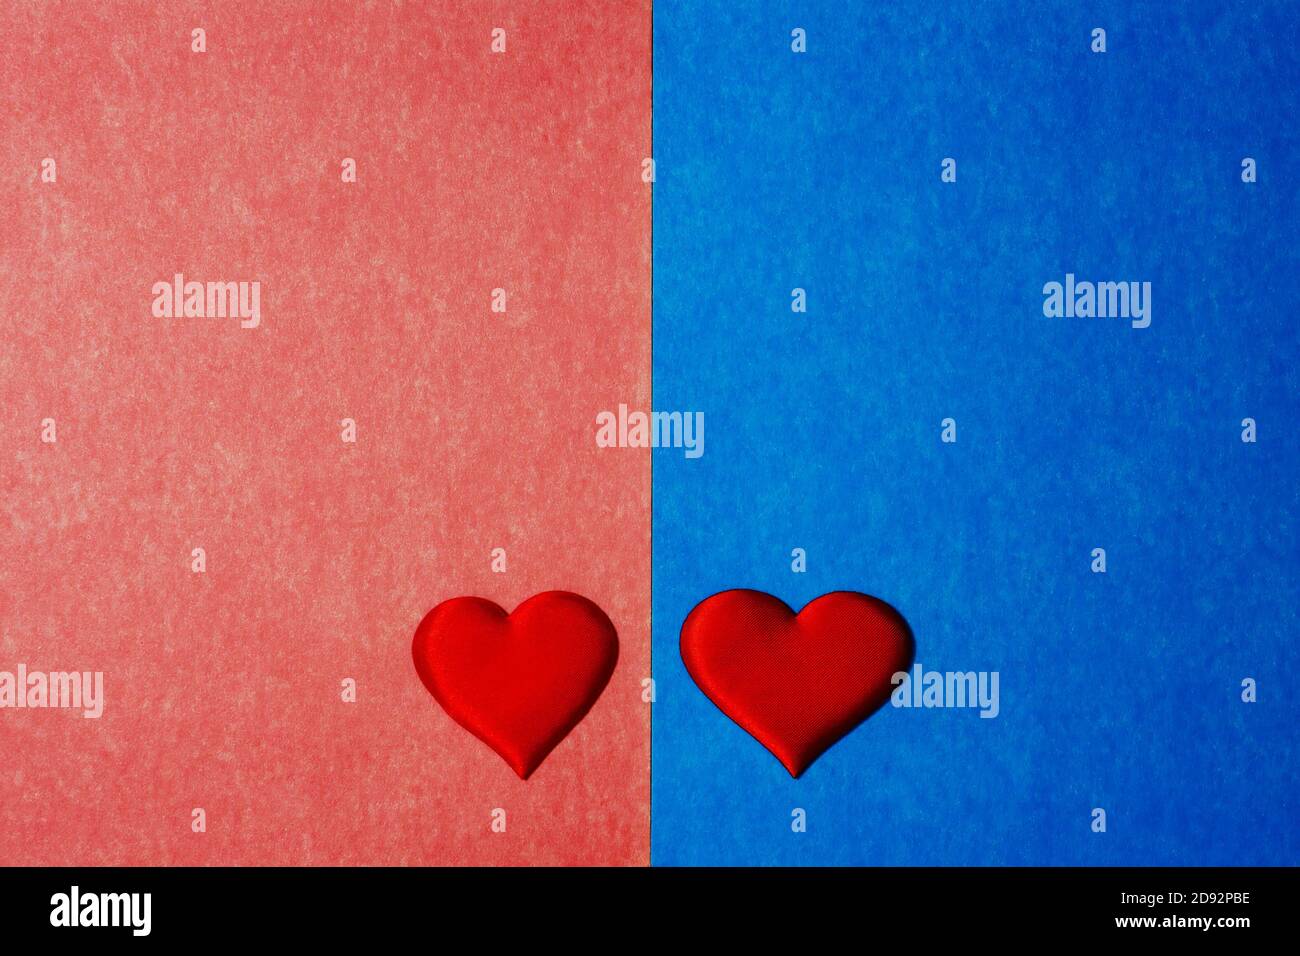 Vue de dessus de deux coeurs rouges sur fond de carton bleu et rose. Espace de copie pour le texte, concept de Saint Valentin. Banque D'Images